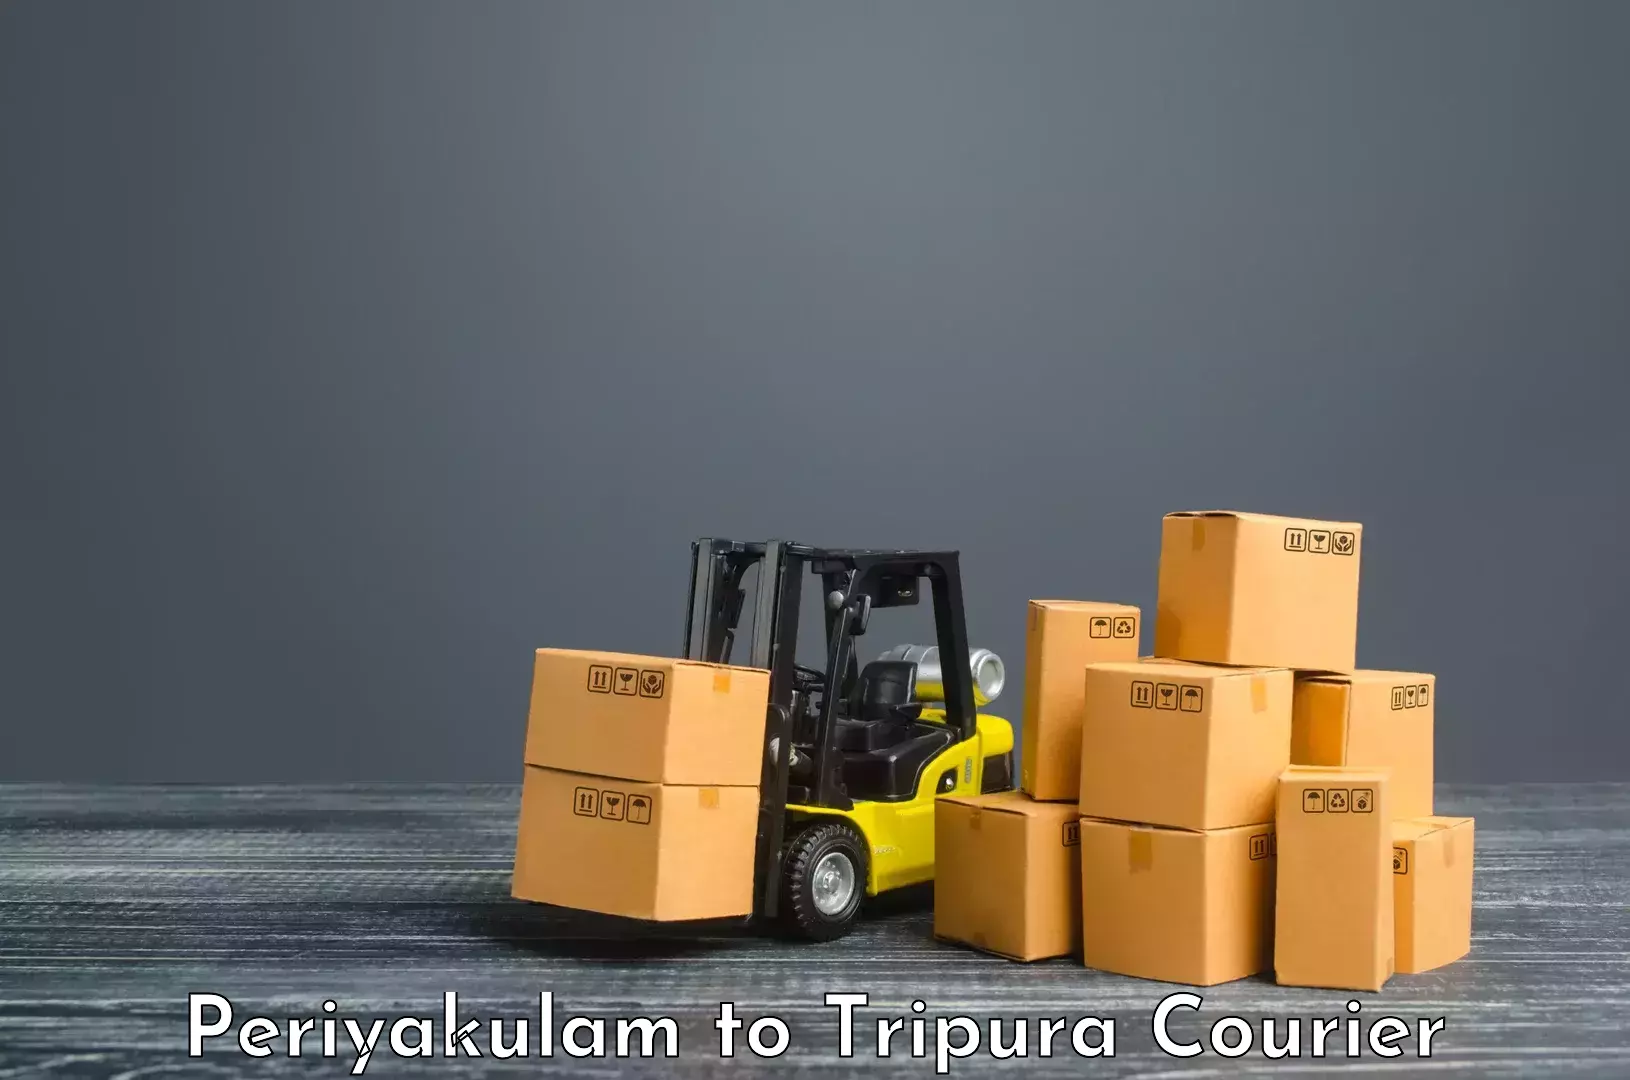 Efficient shipping operations Periyakulam to Agartala